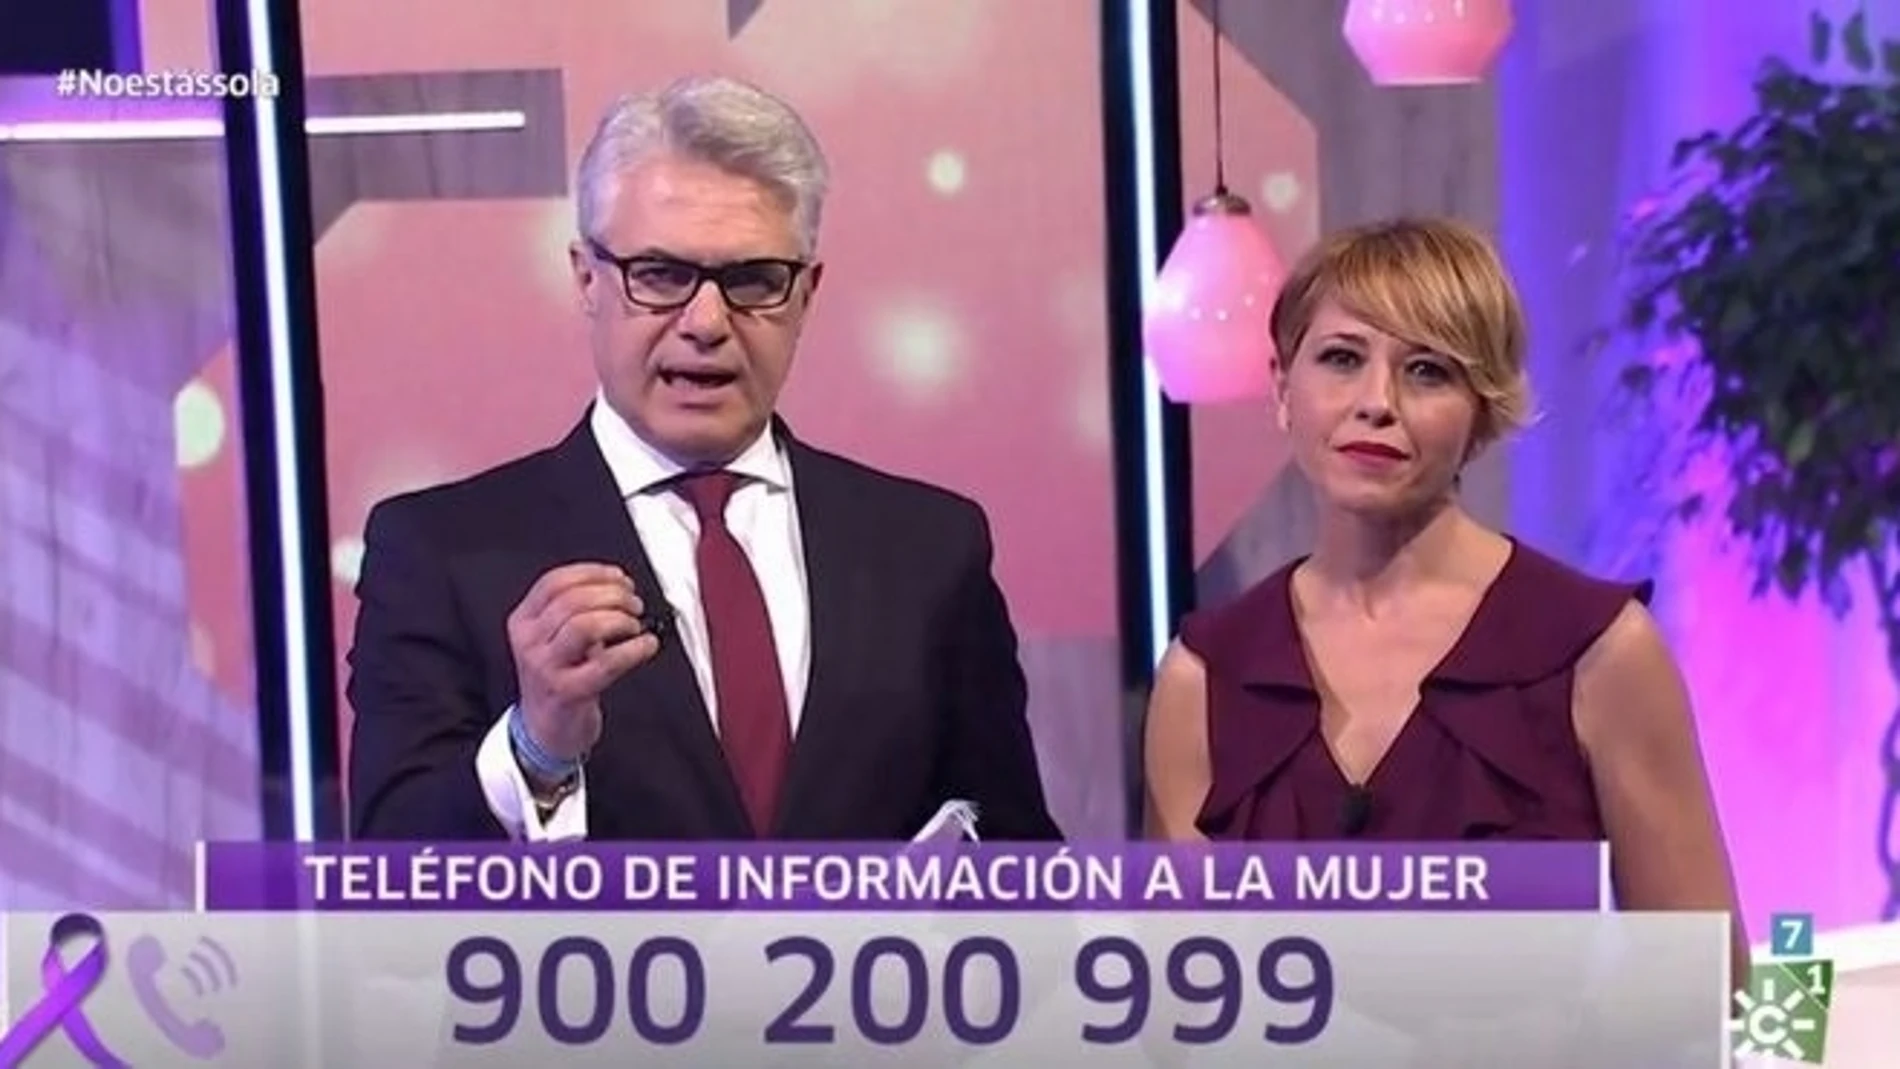 Imagen de los presentadores del programa especial de Canal Sur 'No estás sola', Agustín Bravo y Silvia Sanz, dedicado a las víctimas de la violencia de género